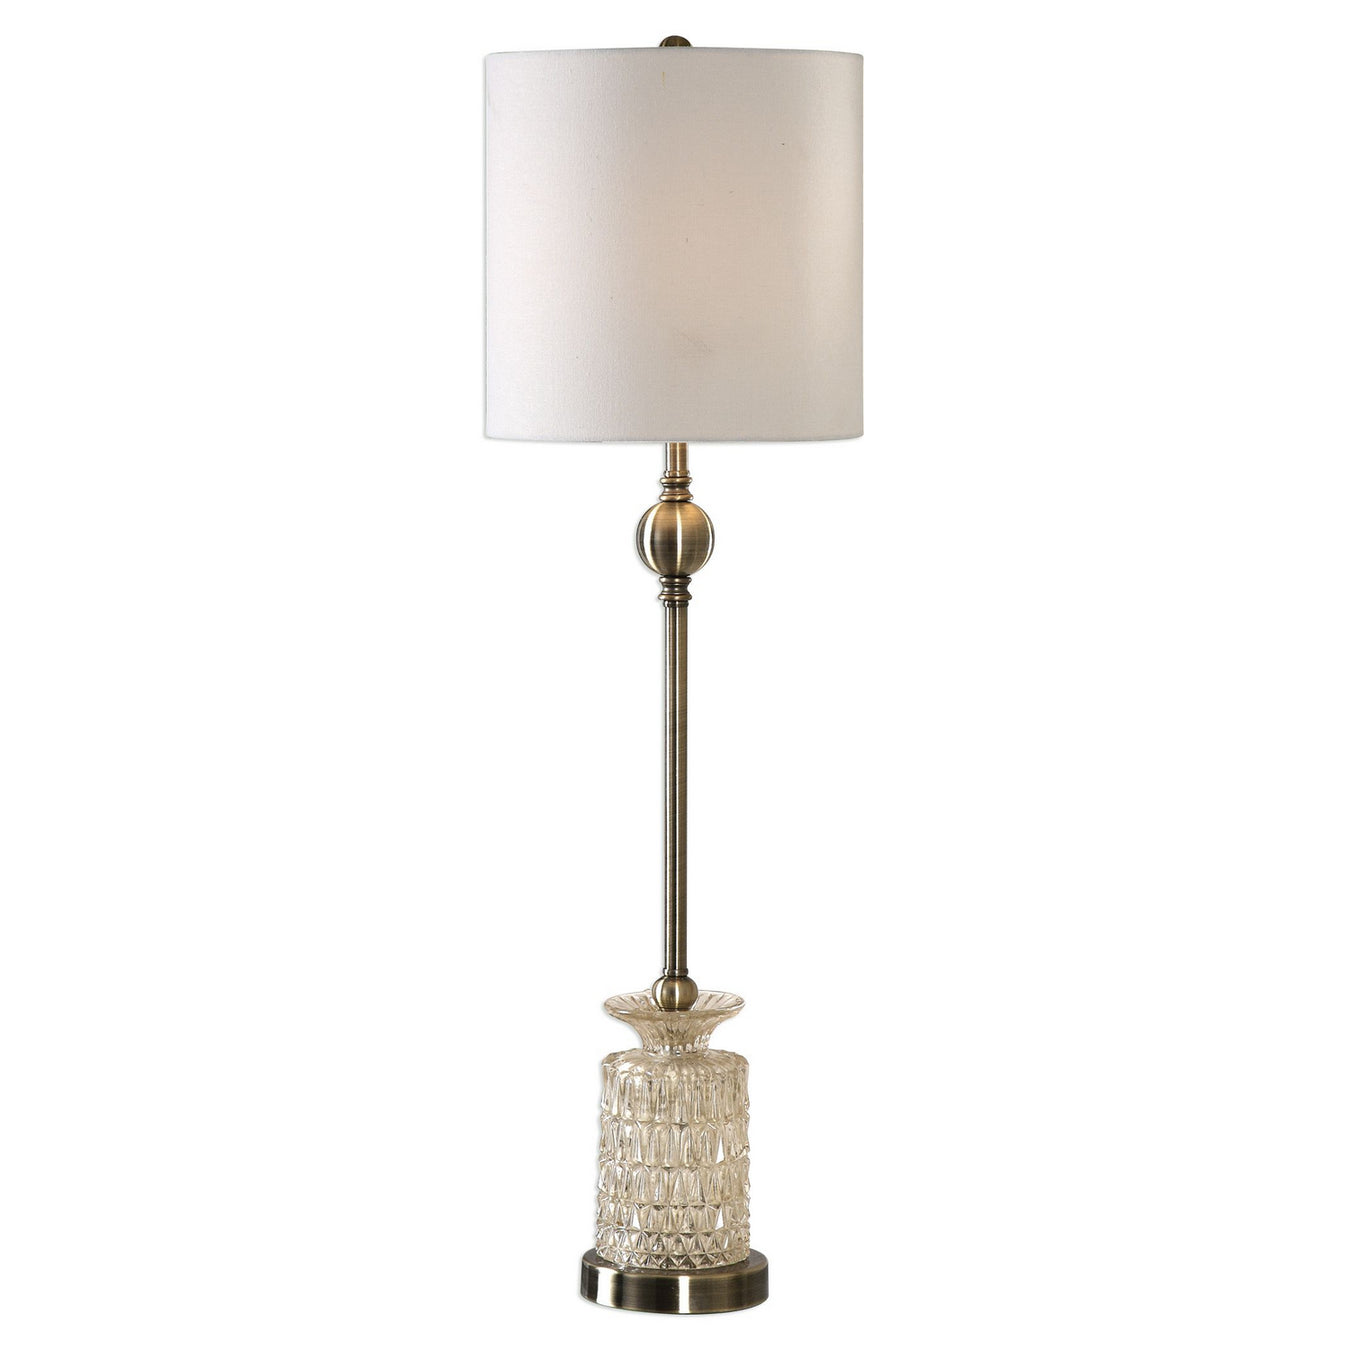 Uttermost's Flaviana Antique Brass Buffet Lamp Designed by David Frisch